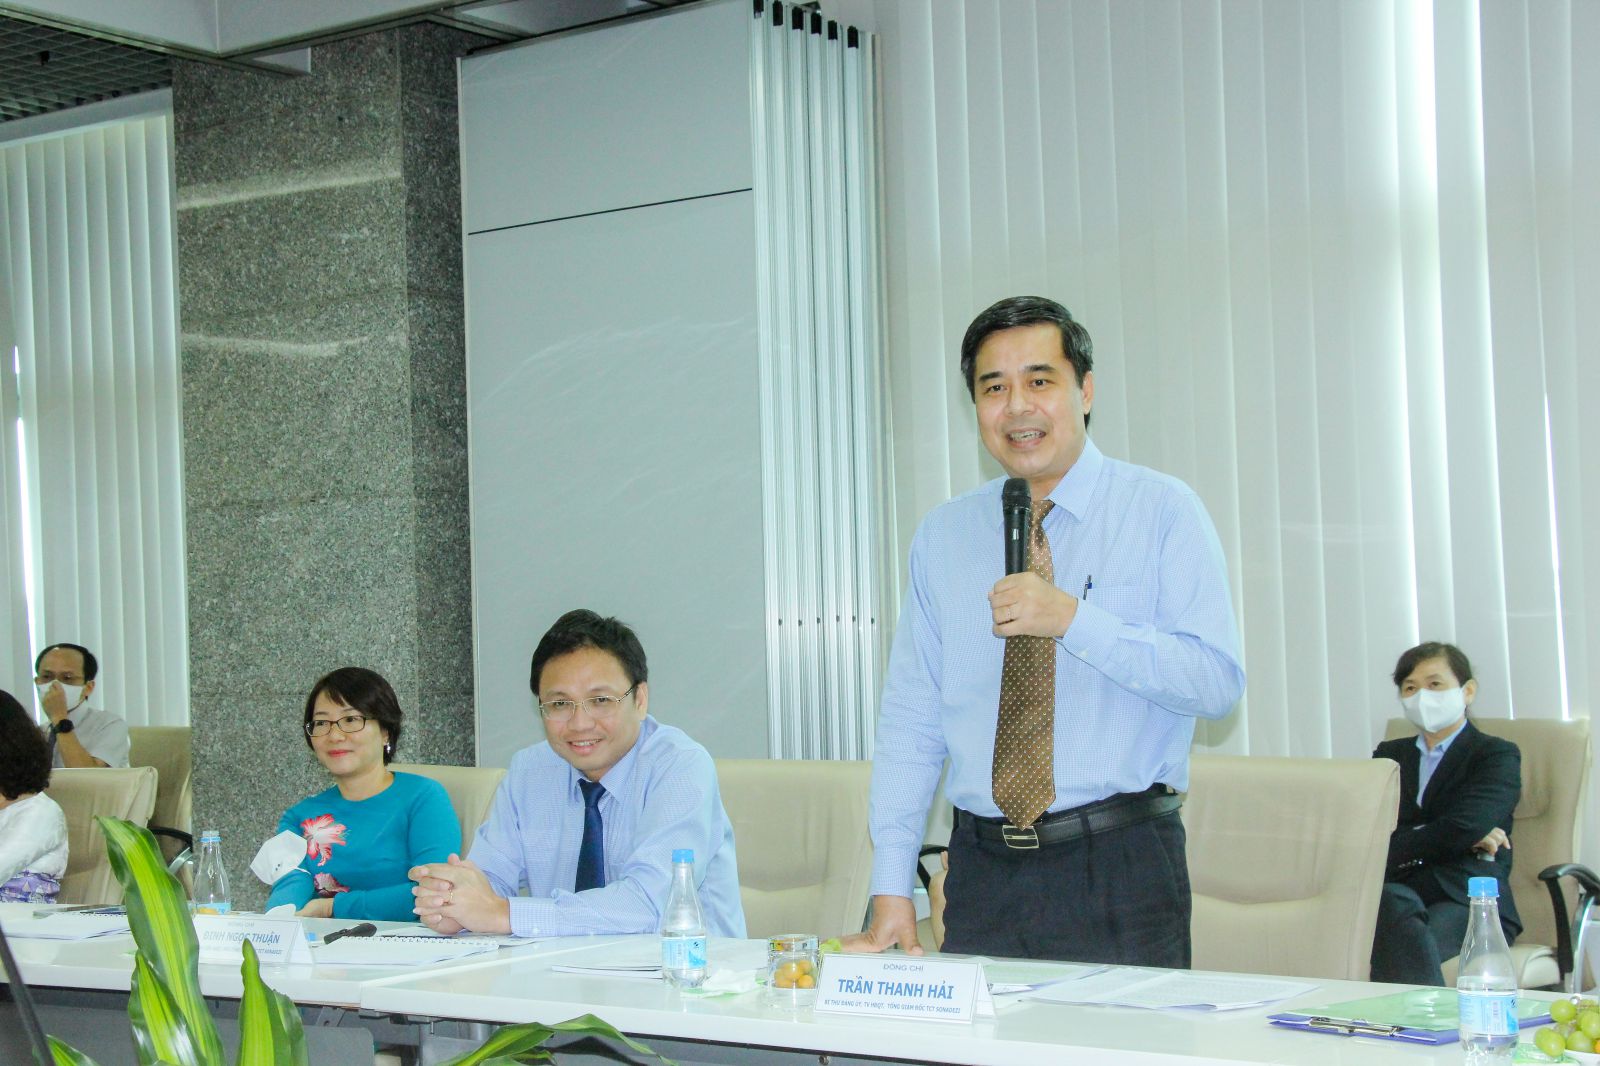 Ông Trần Thanh Hải – Bí thư Đảng ủy, Tổng giám đốc Sonadezi báo cáo về công tác xây dựng Đảng của Sonadezi